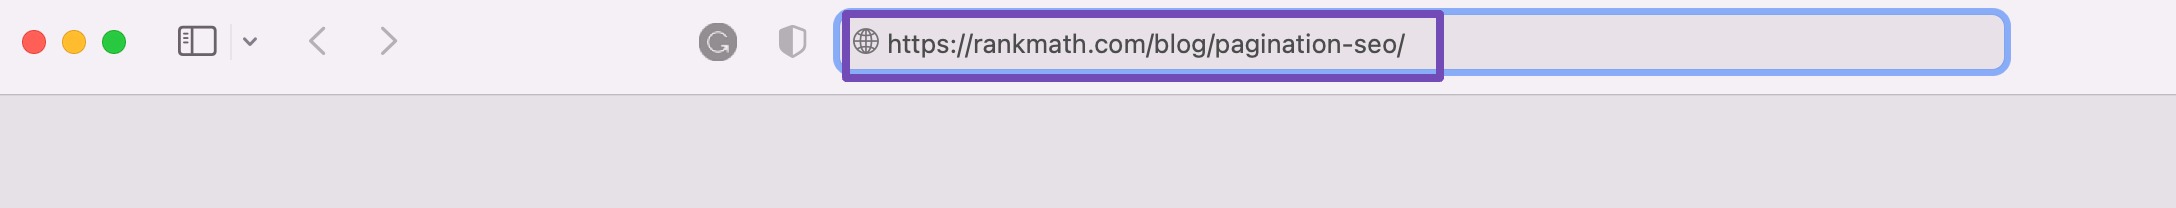 Exemple d'URL optimisée pour le référencement